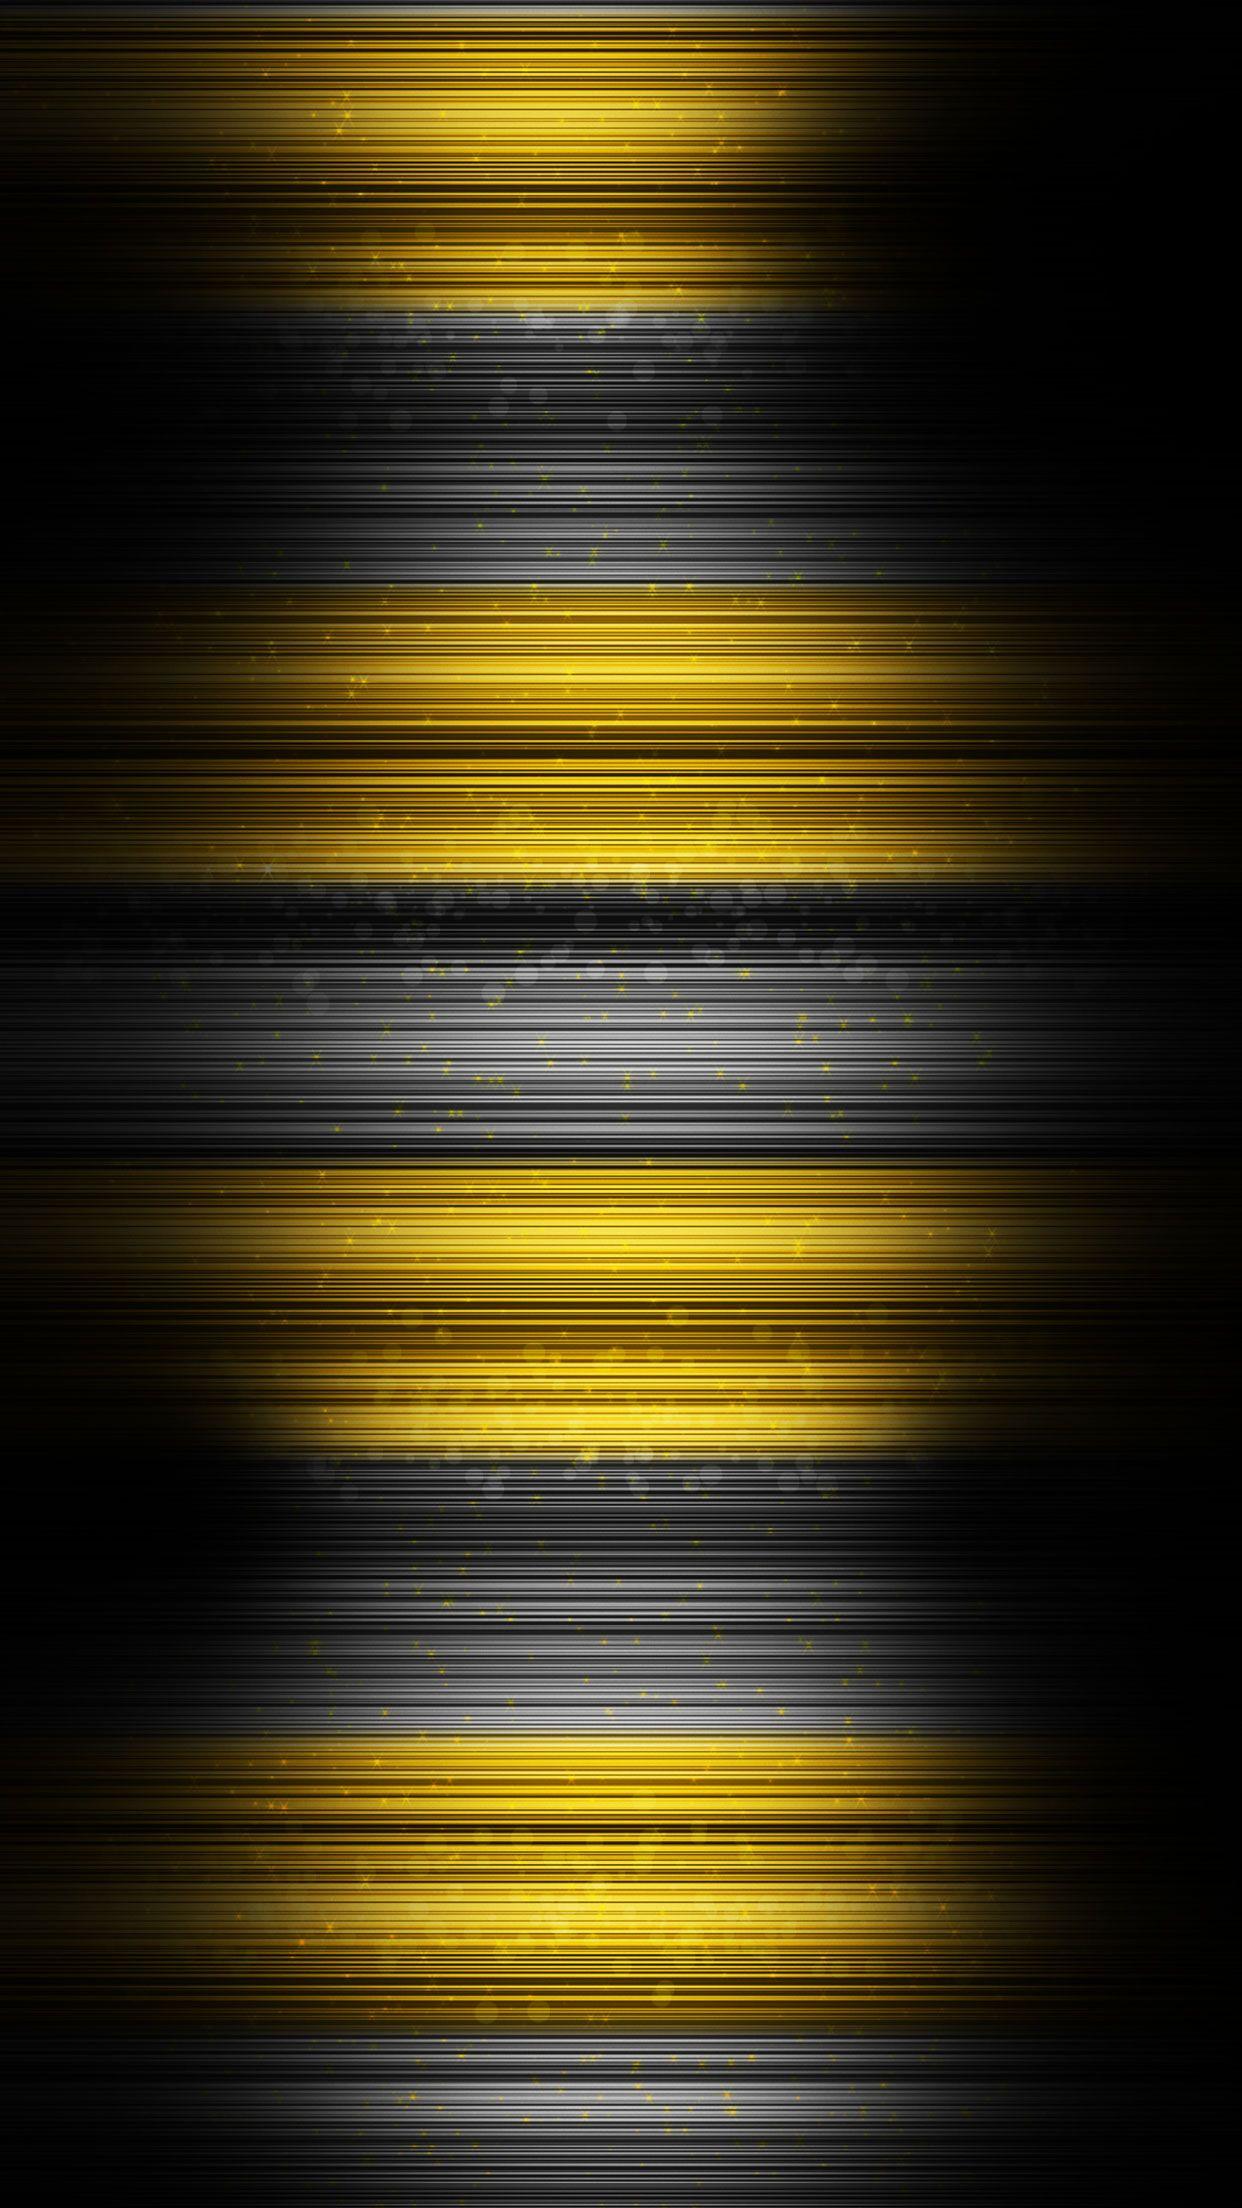 40 Gambar Black and Yellow Iphone Wallpaper Hd terbaru 2020